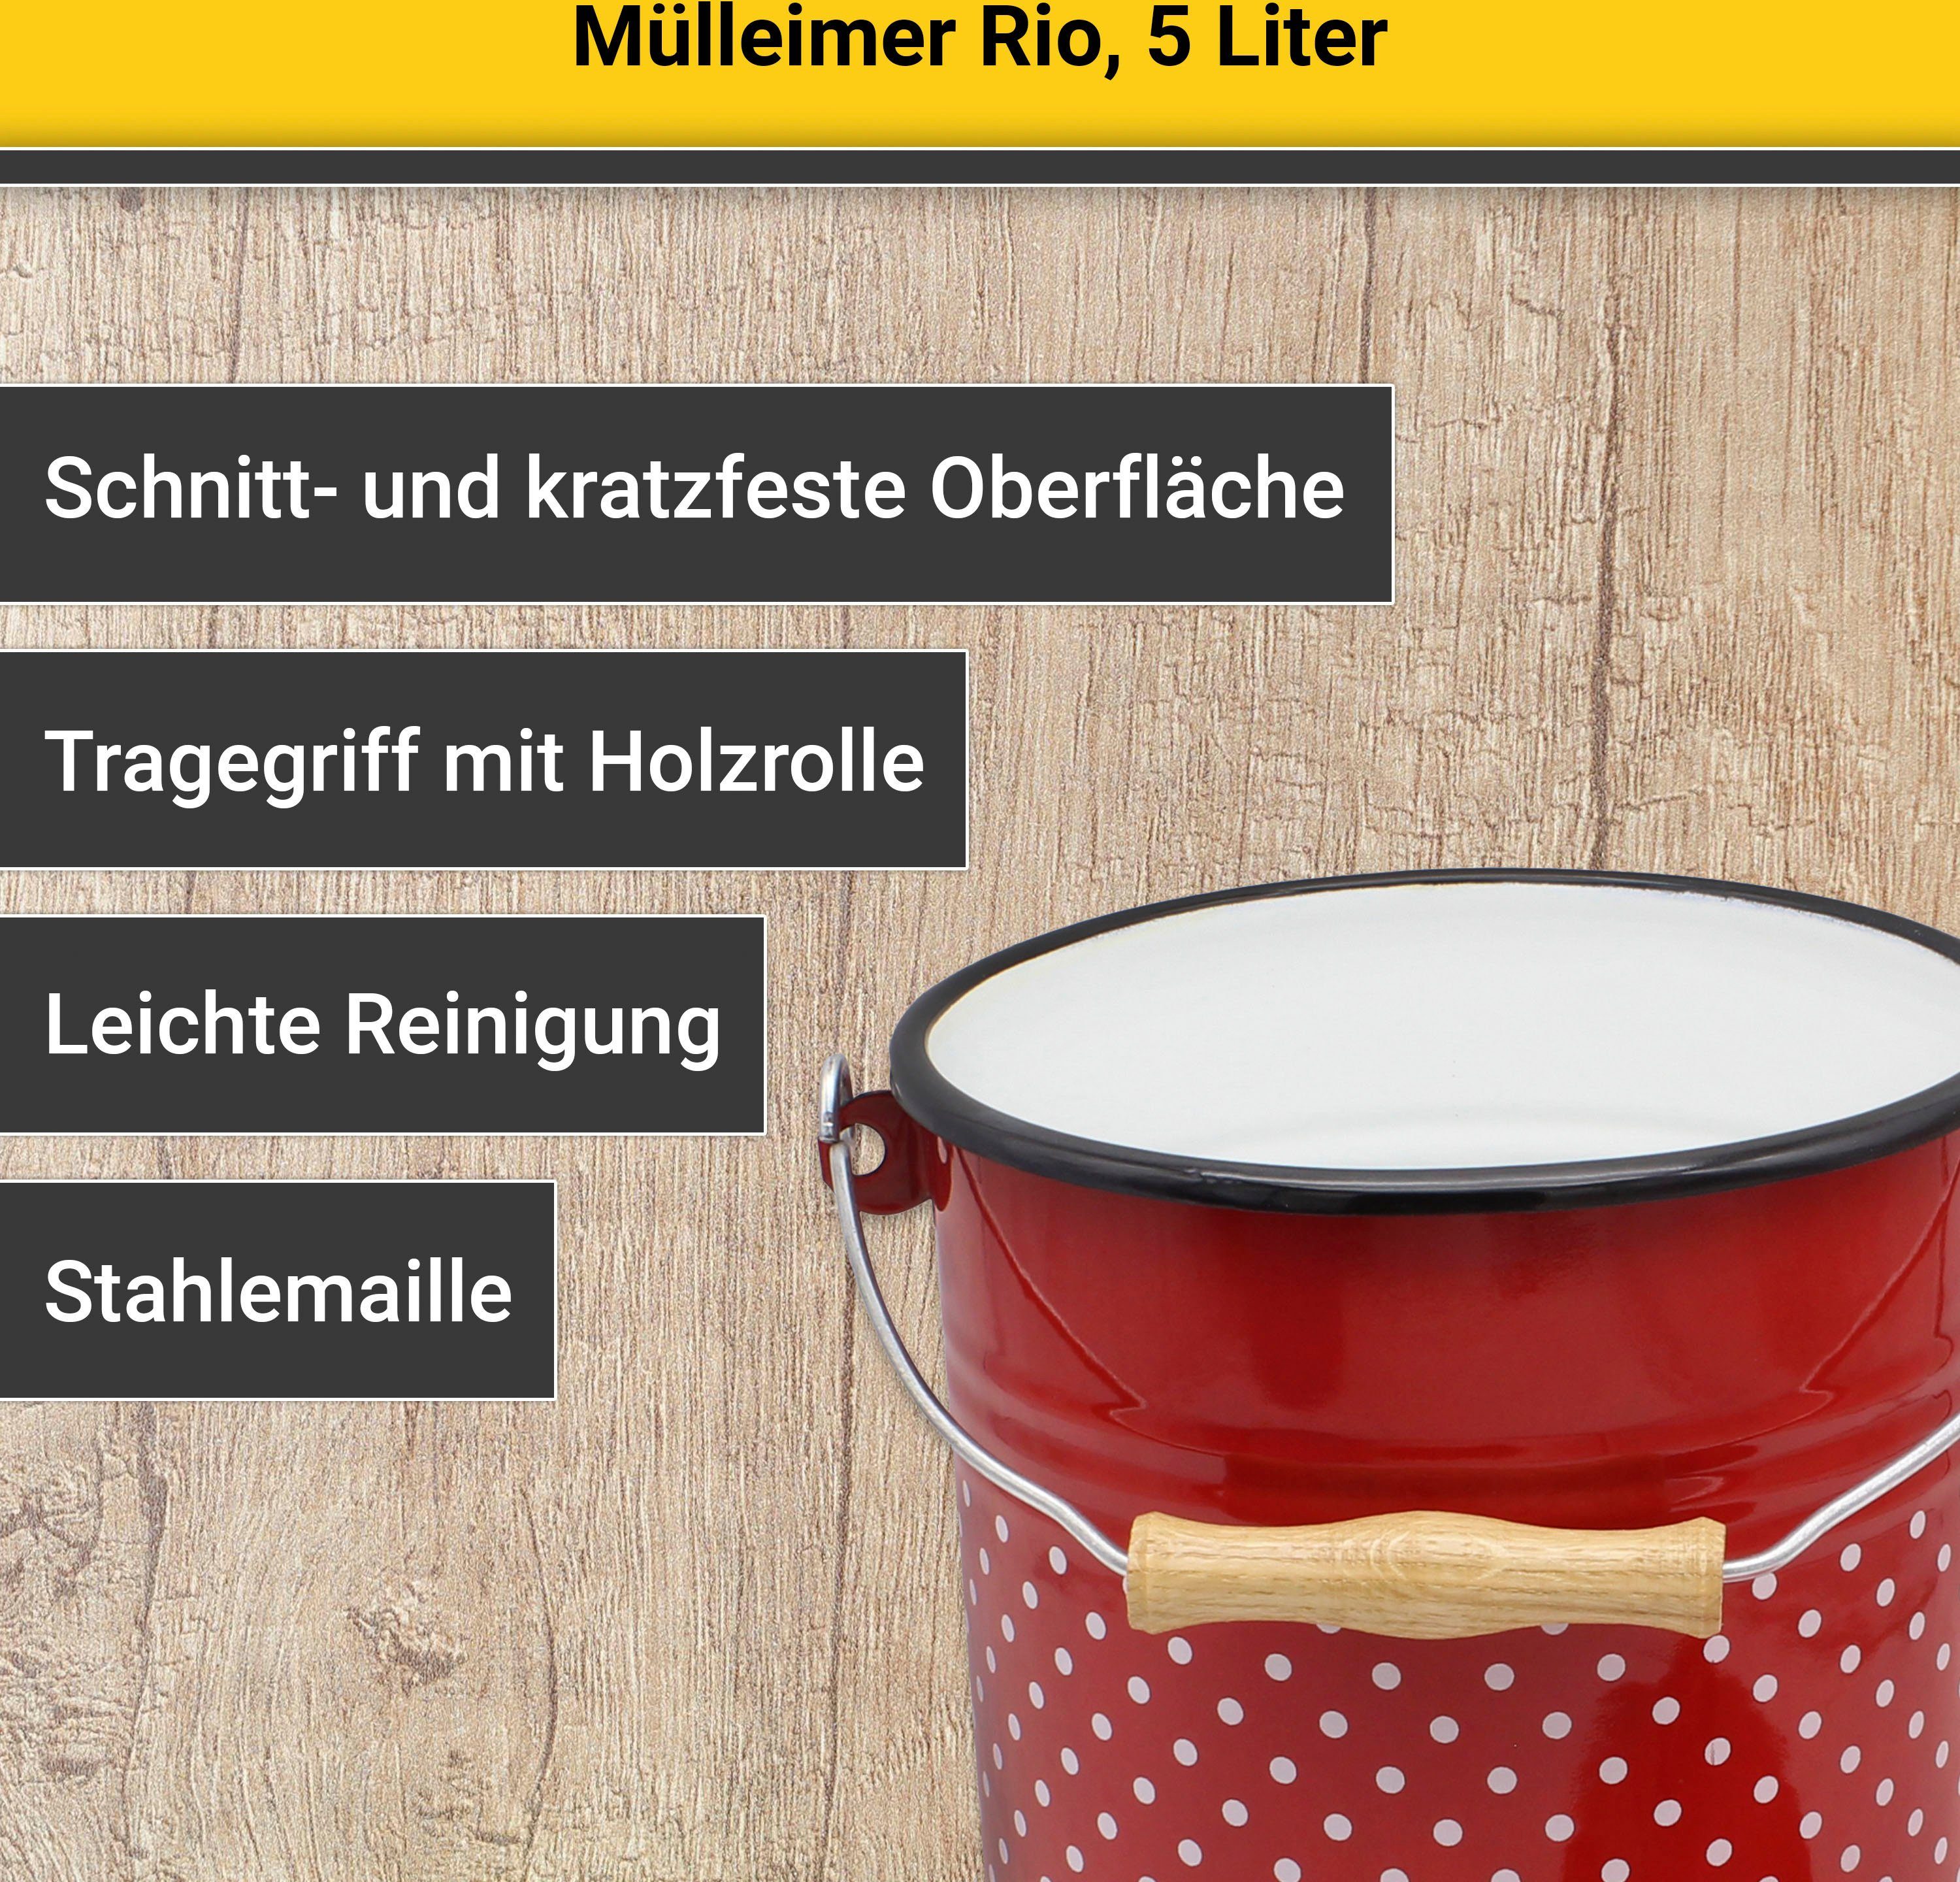 Krüger Rio, Mülleimer Mülleimer 5 mit Deckel Europe Made Liter, in rot